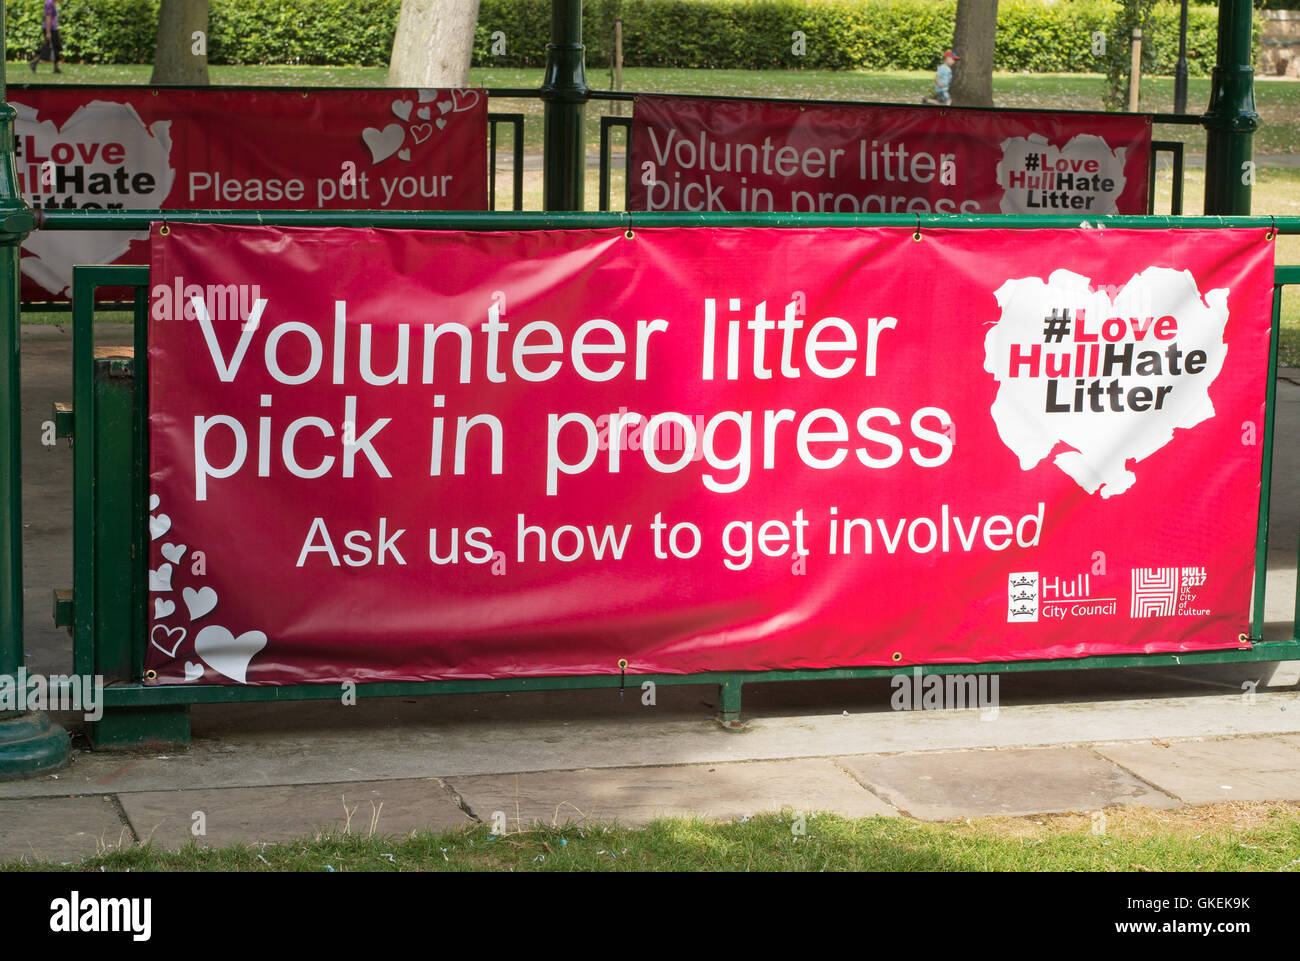 Volunteer litter pick in progress banner Kingston upon Hull, Yorkshire, England, UK Stock Photo